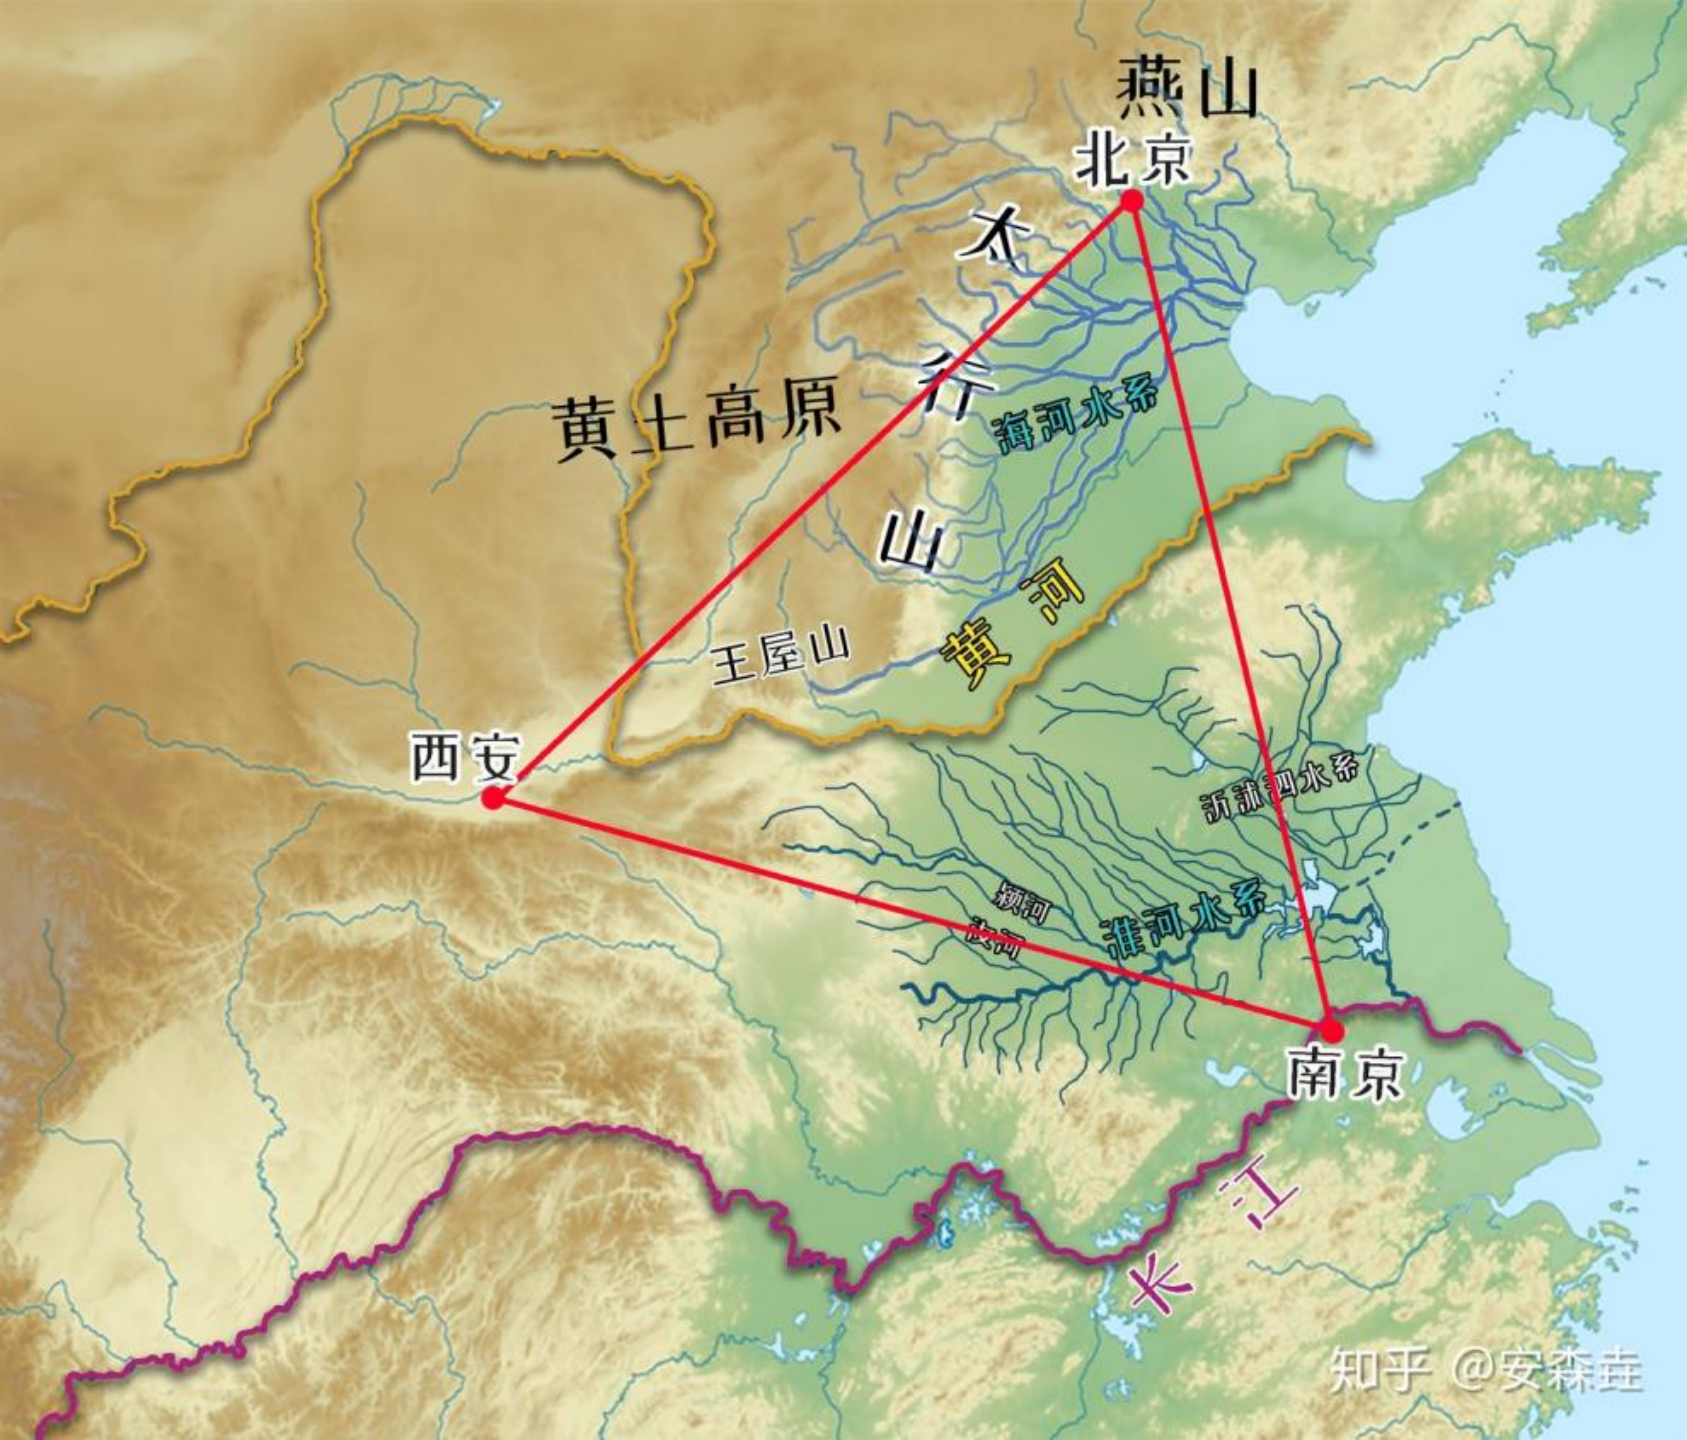 图 4： 三角区域中的三角平原地带「黄淮海平原」 示意图